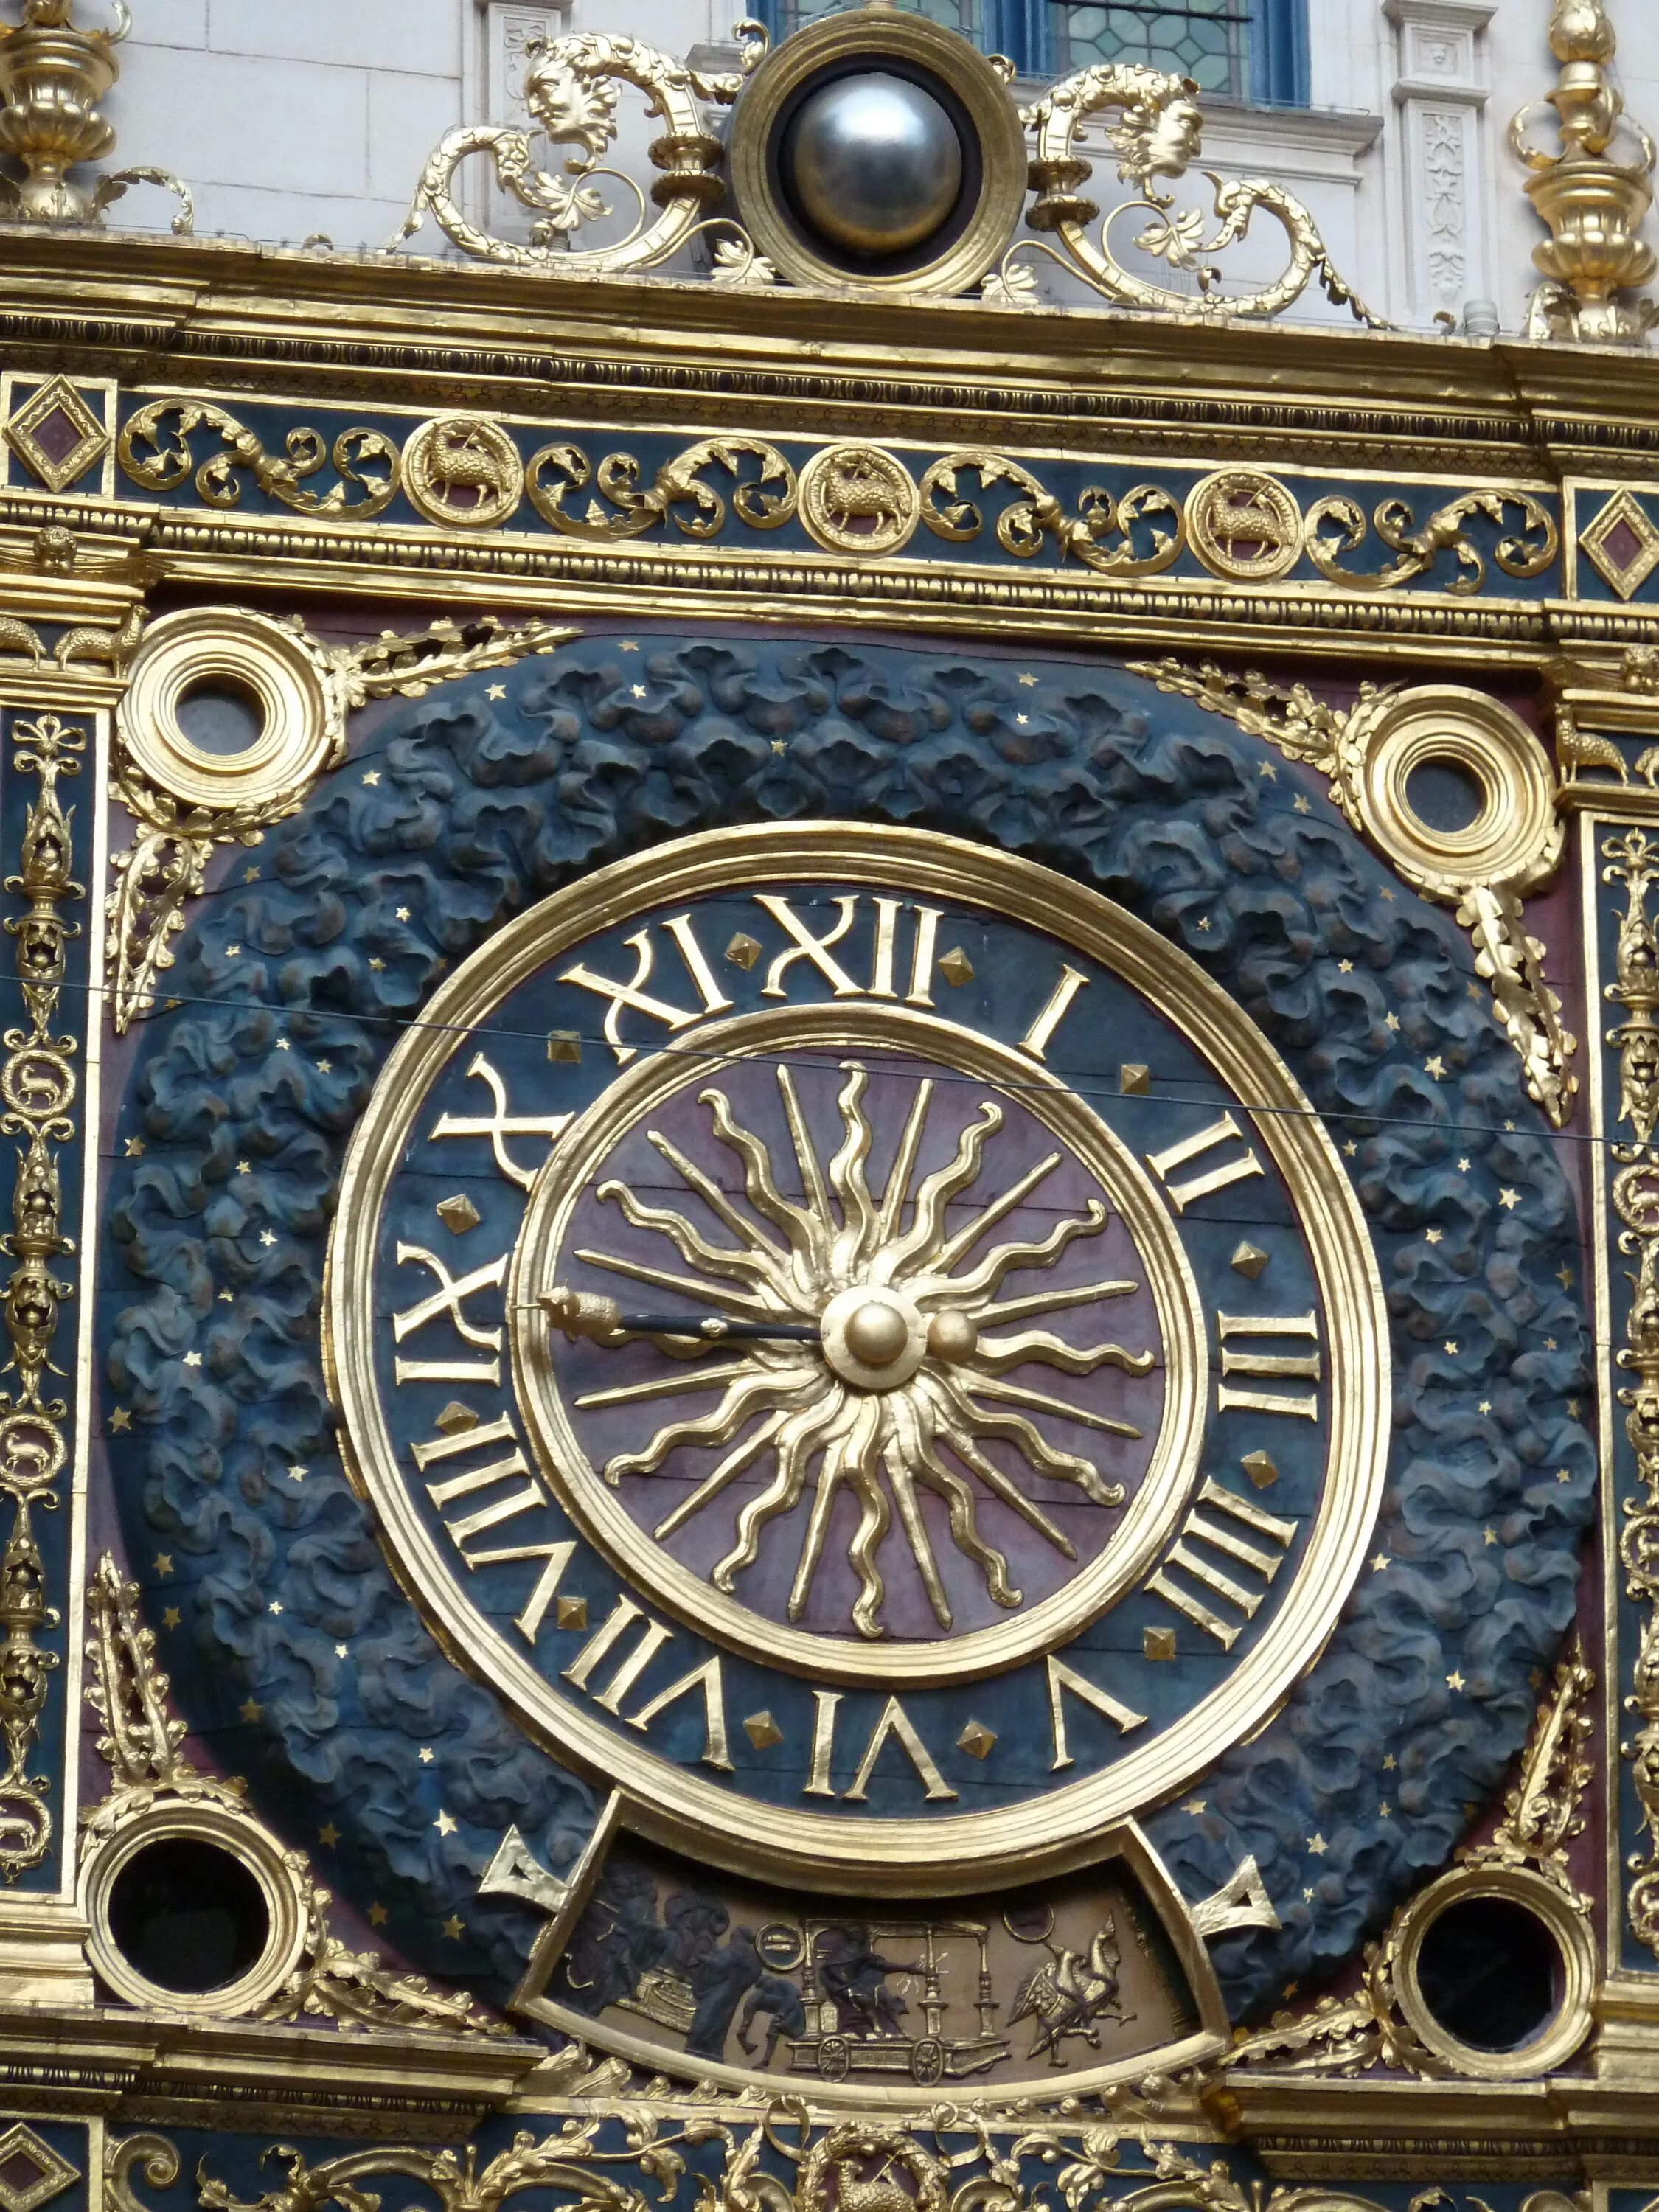 French hours. Rouen France часы. Астрономические часы Руана. Башенные часы во Франции. Башня с часами Франция.